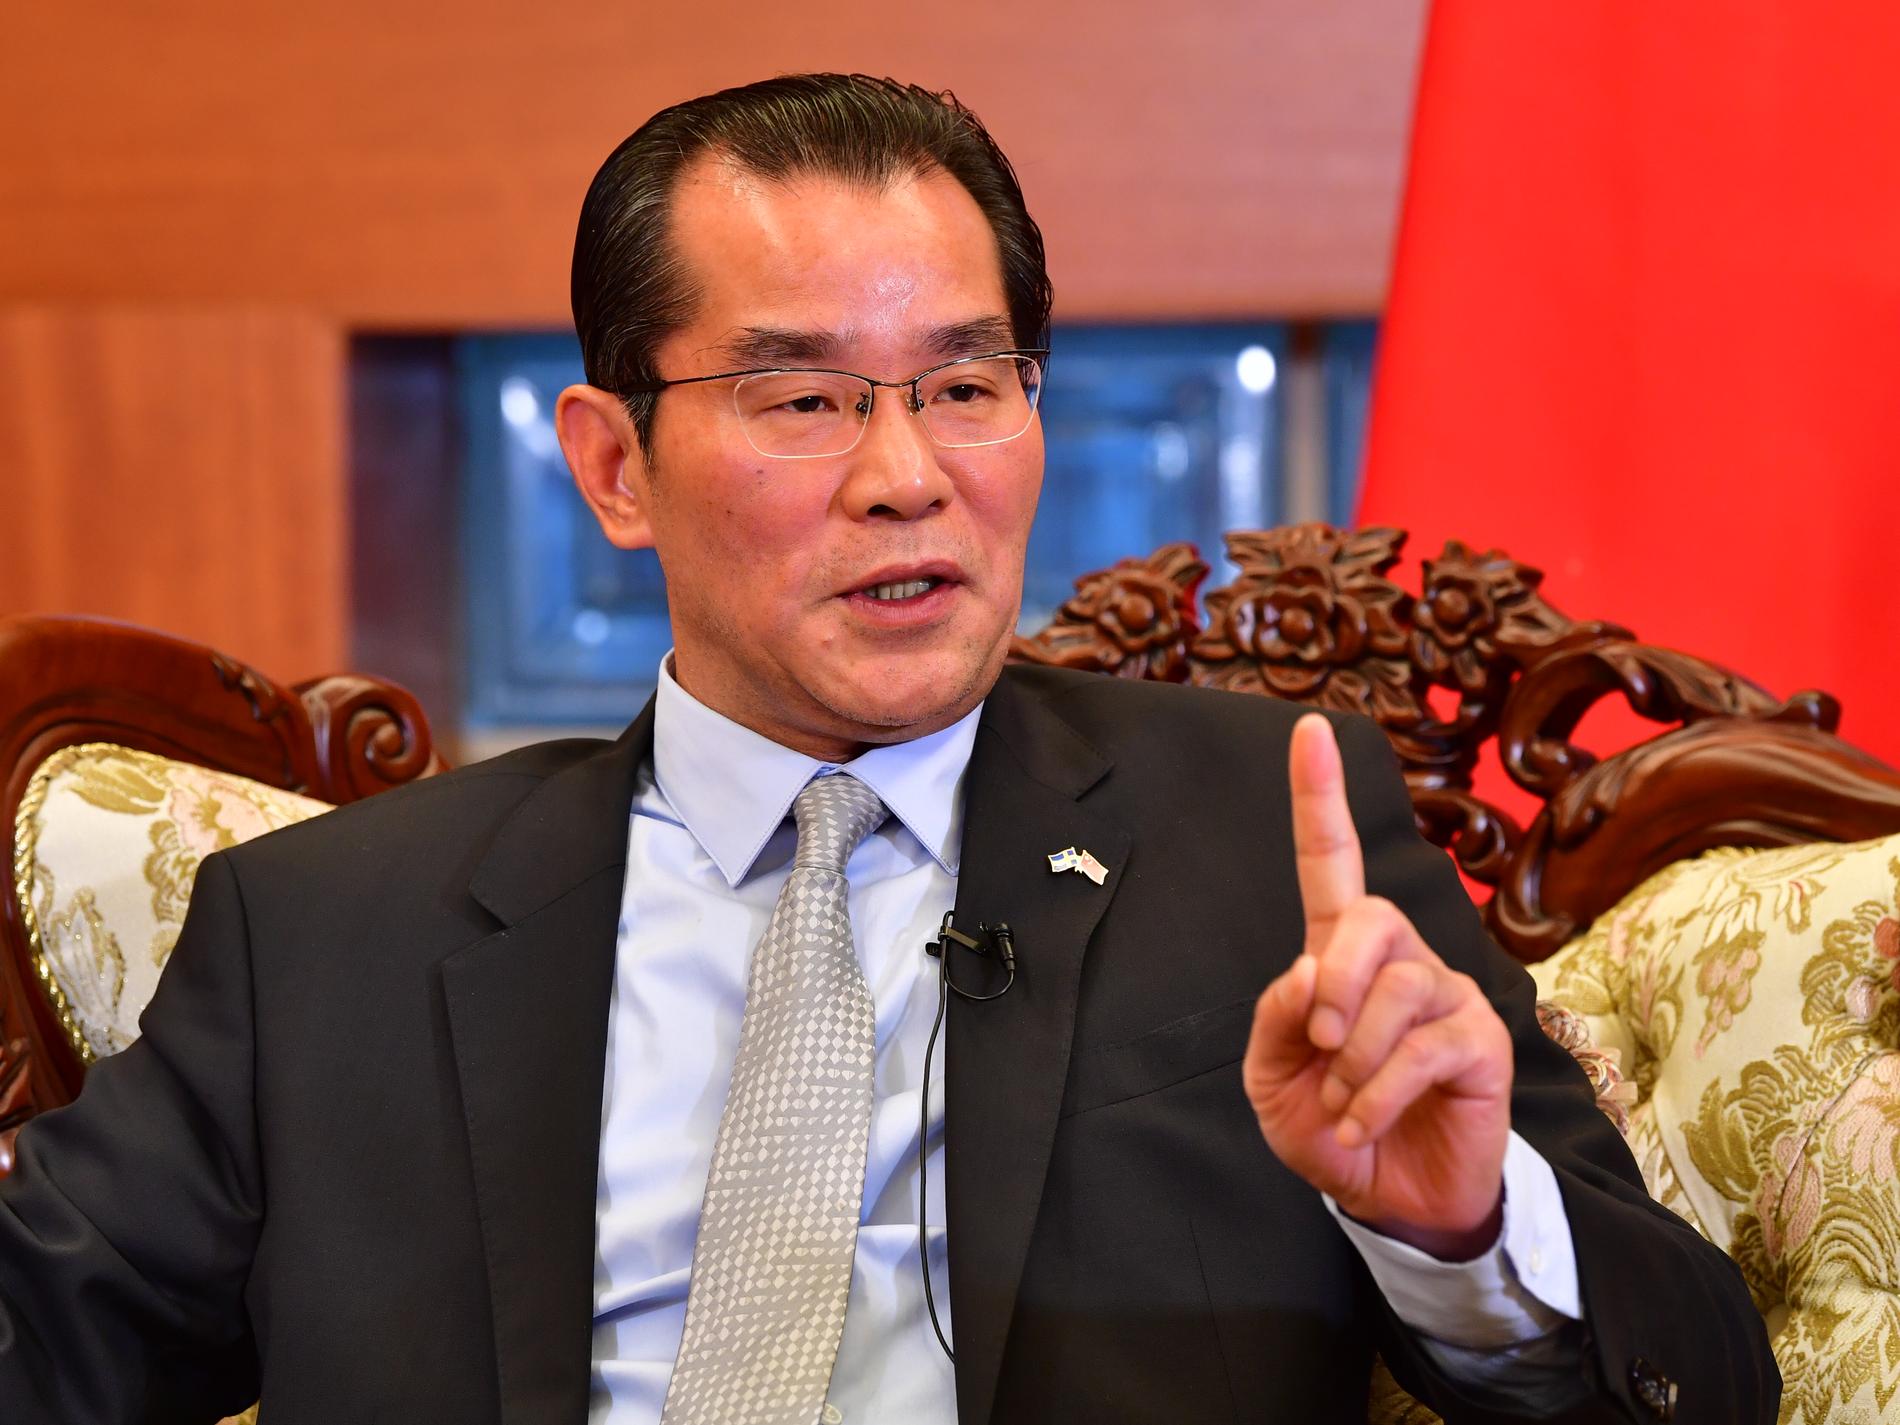 Gui Congyou är Kinas ambassadör i Sverige. I veckan höjde han Kinas tonläge mot Sverige. 